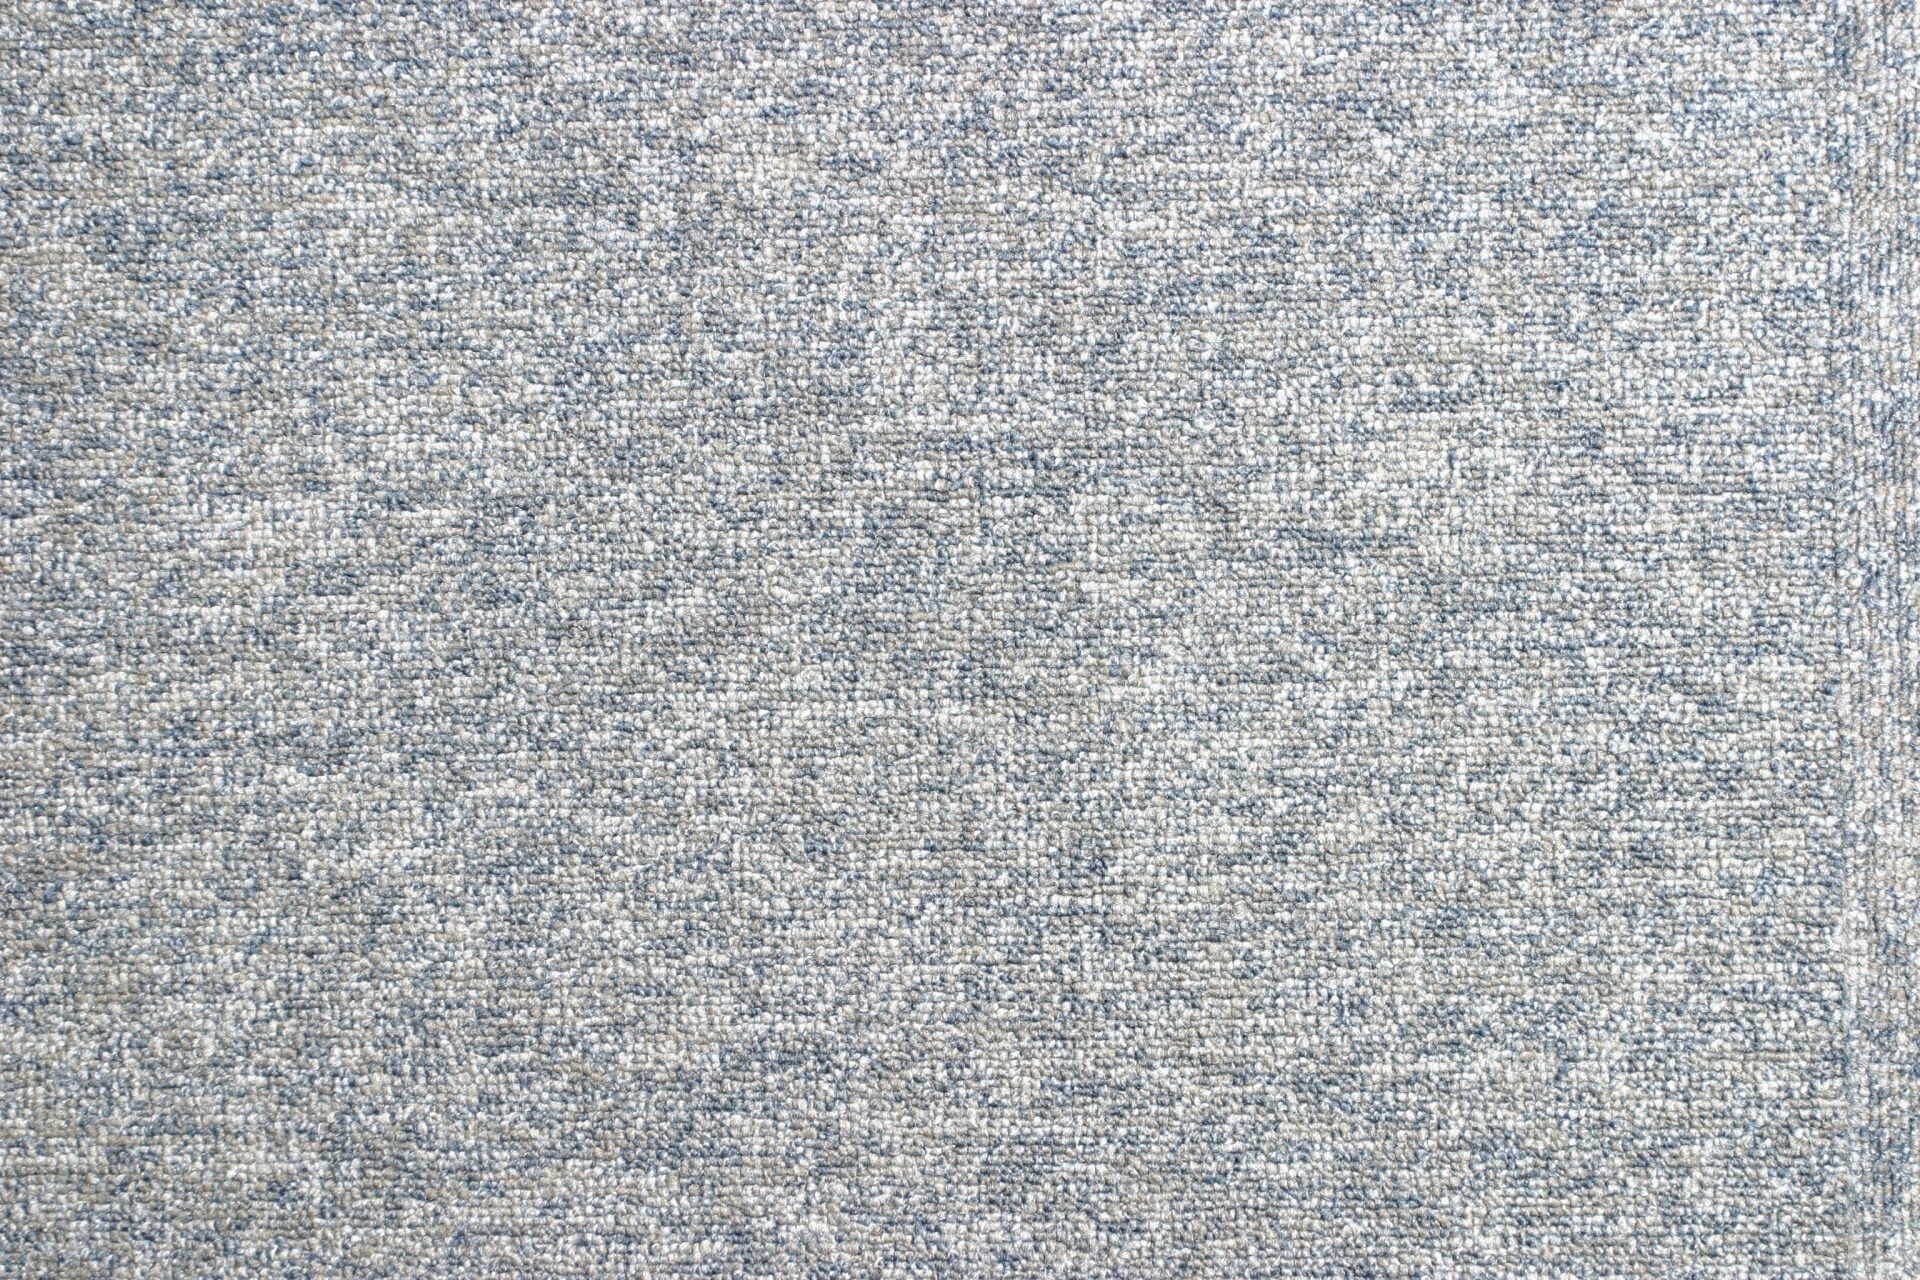 carpet-after